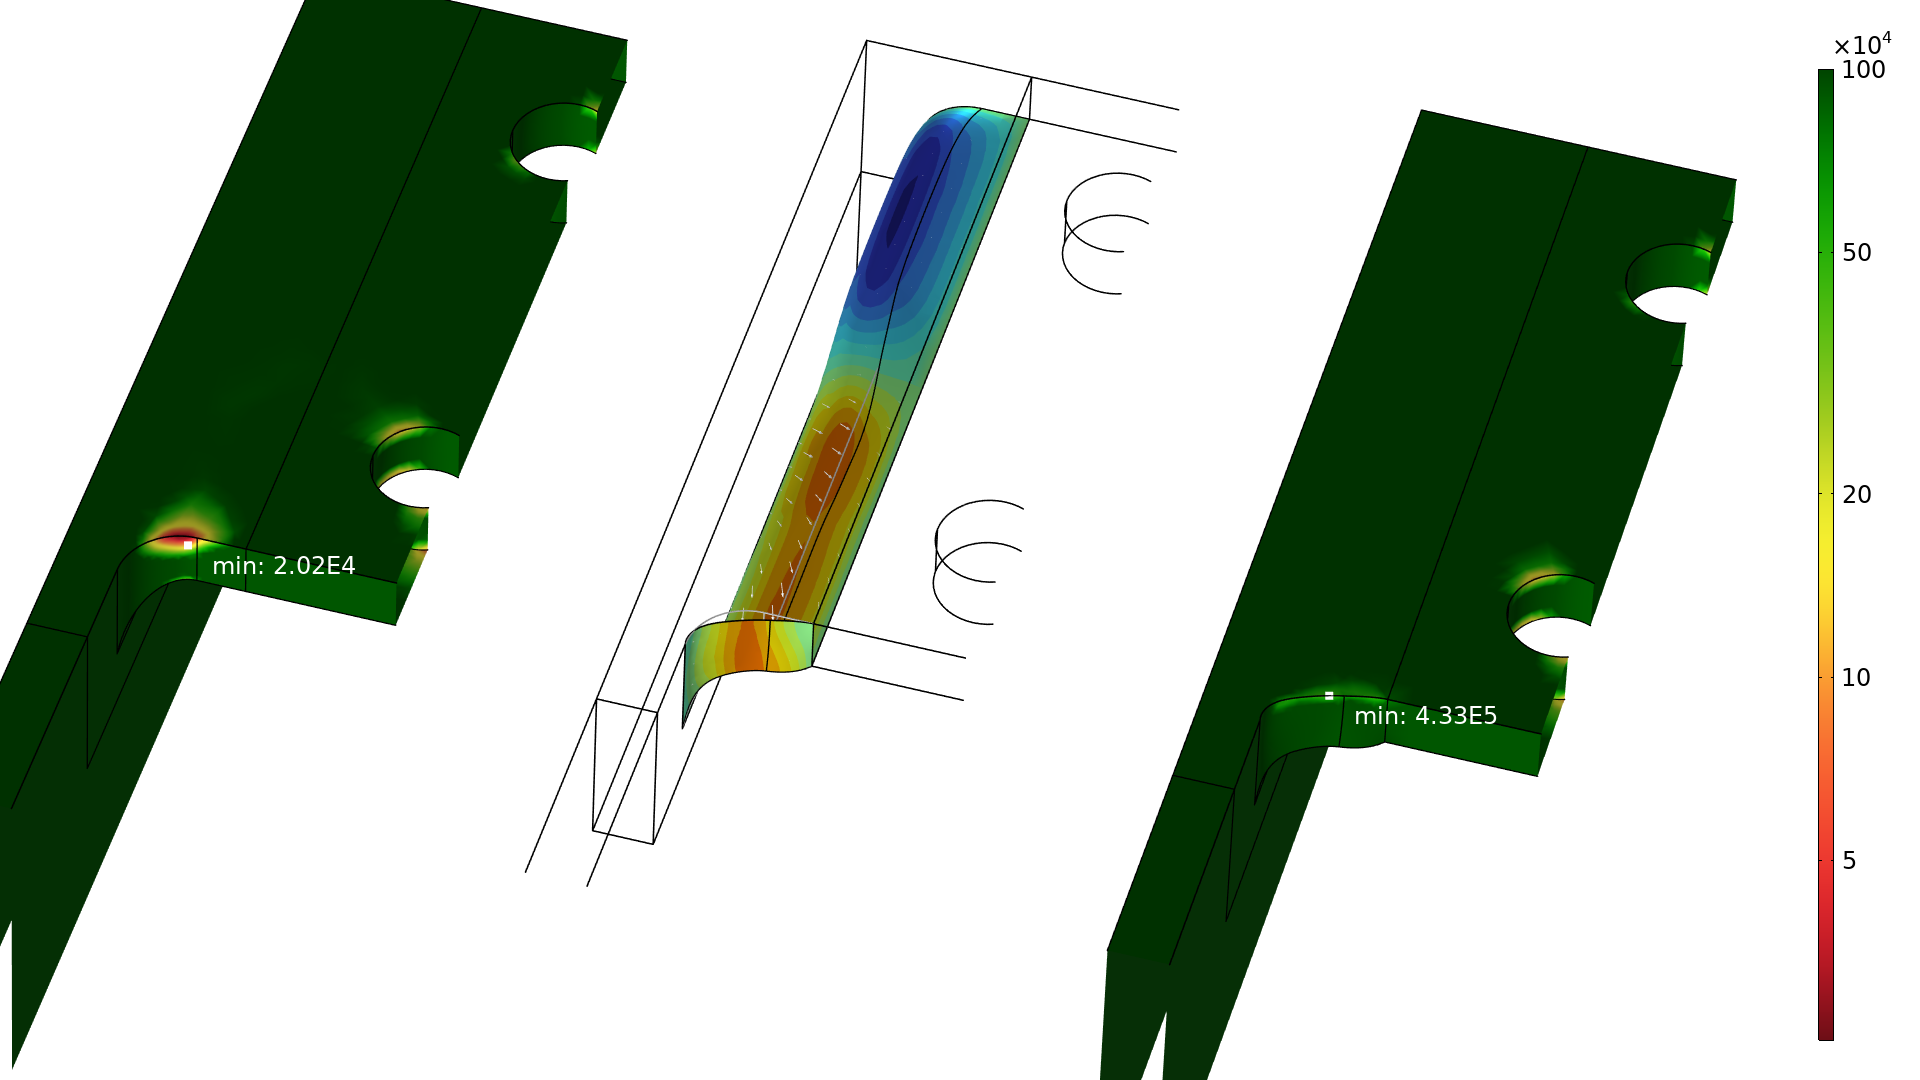 支架模型的两个特写图显示了初始圆角设计(左)和形状优化设计(右)之间失效循环次数的增加。中间图说明了形状的变化，彩虹色比例对应于添加或删除材料的区域。